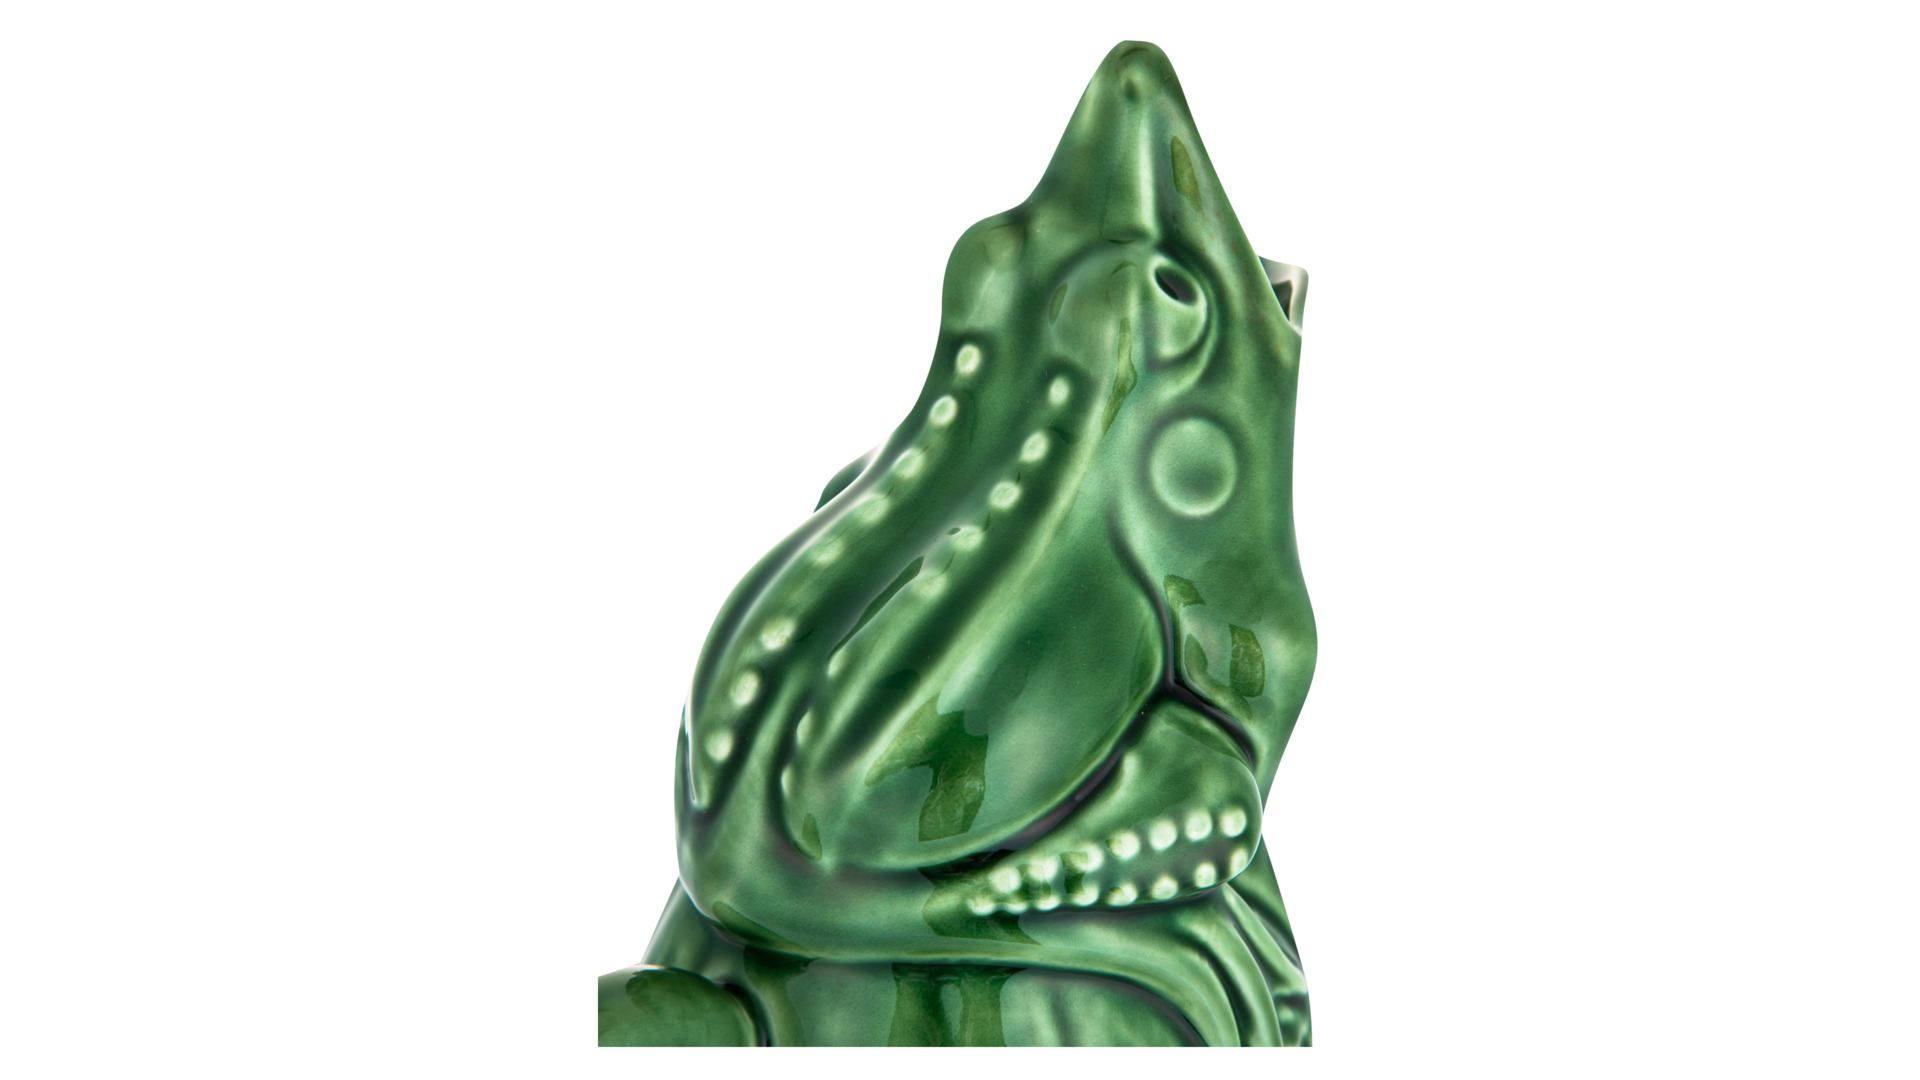 Кувшин Bordallo Pinheiro Лягушка 1,4 л, зеленый, керамика